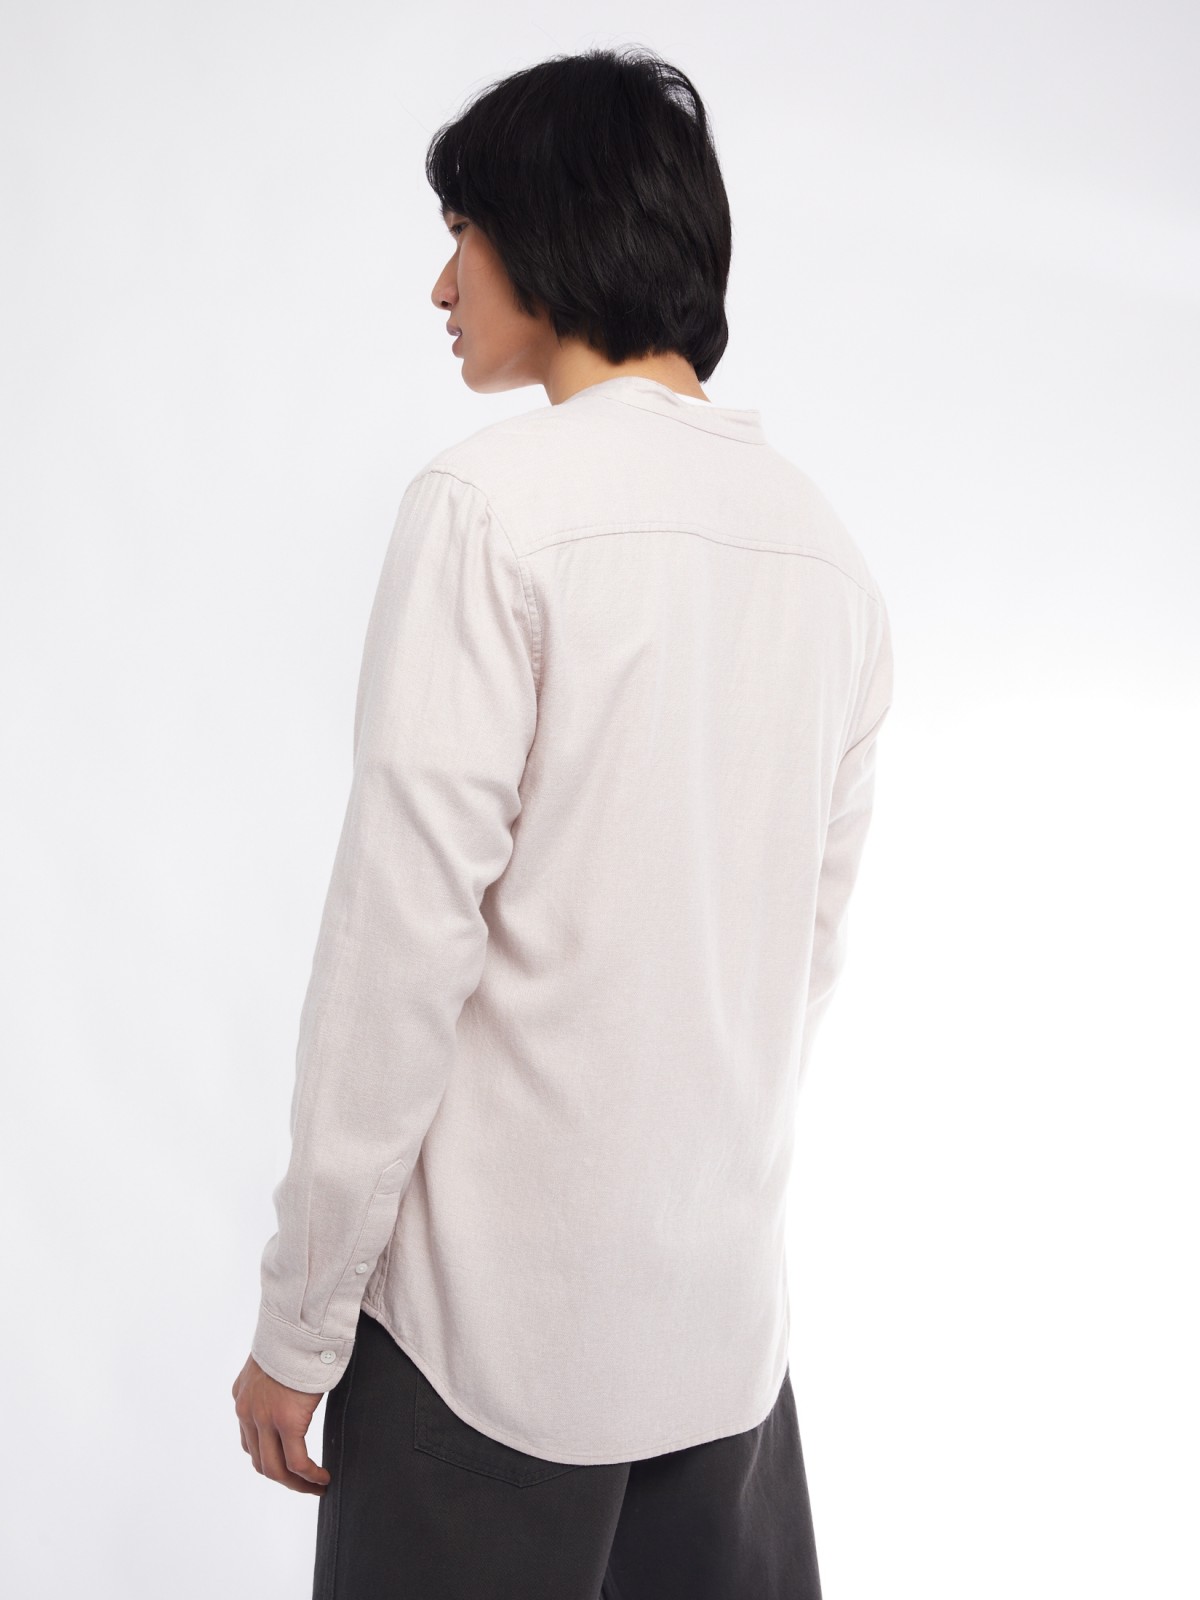 Офисная рубашка из хлопка с воротником-стойкой и длинным рукавом zolla 014122116023, цвет бежевый, размер M - фото 5